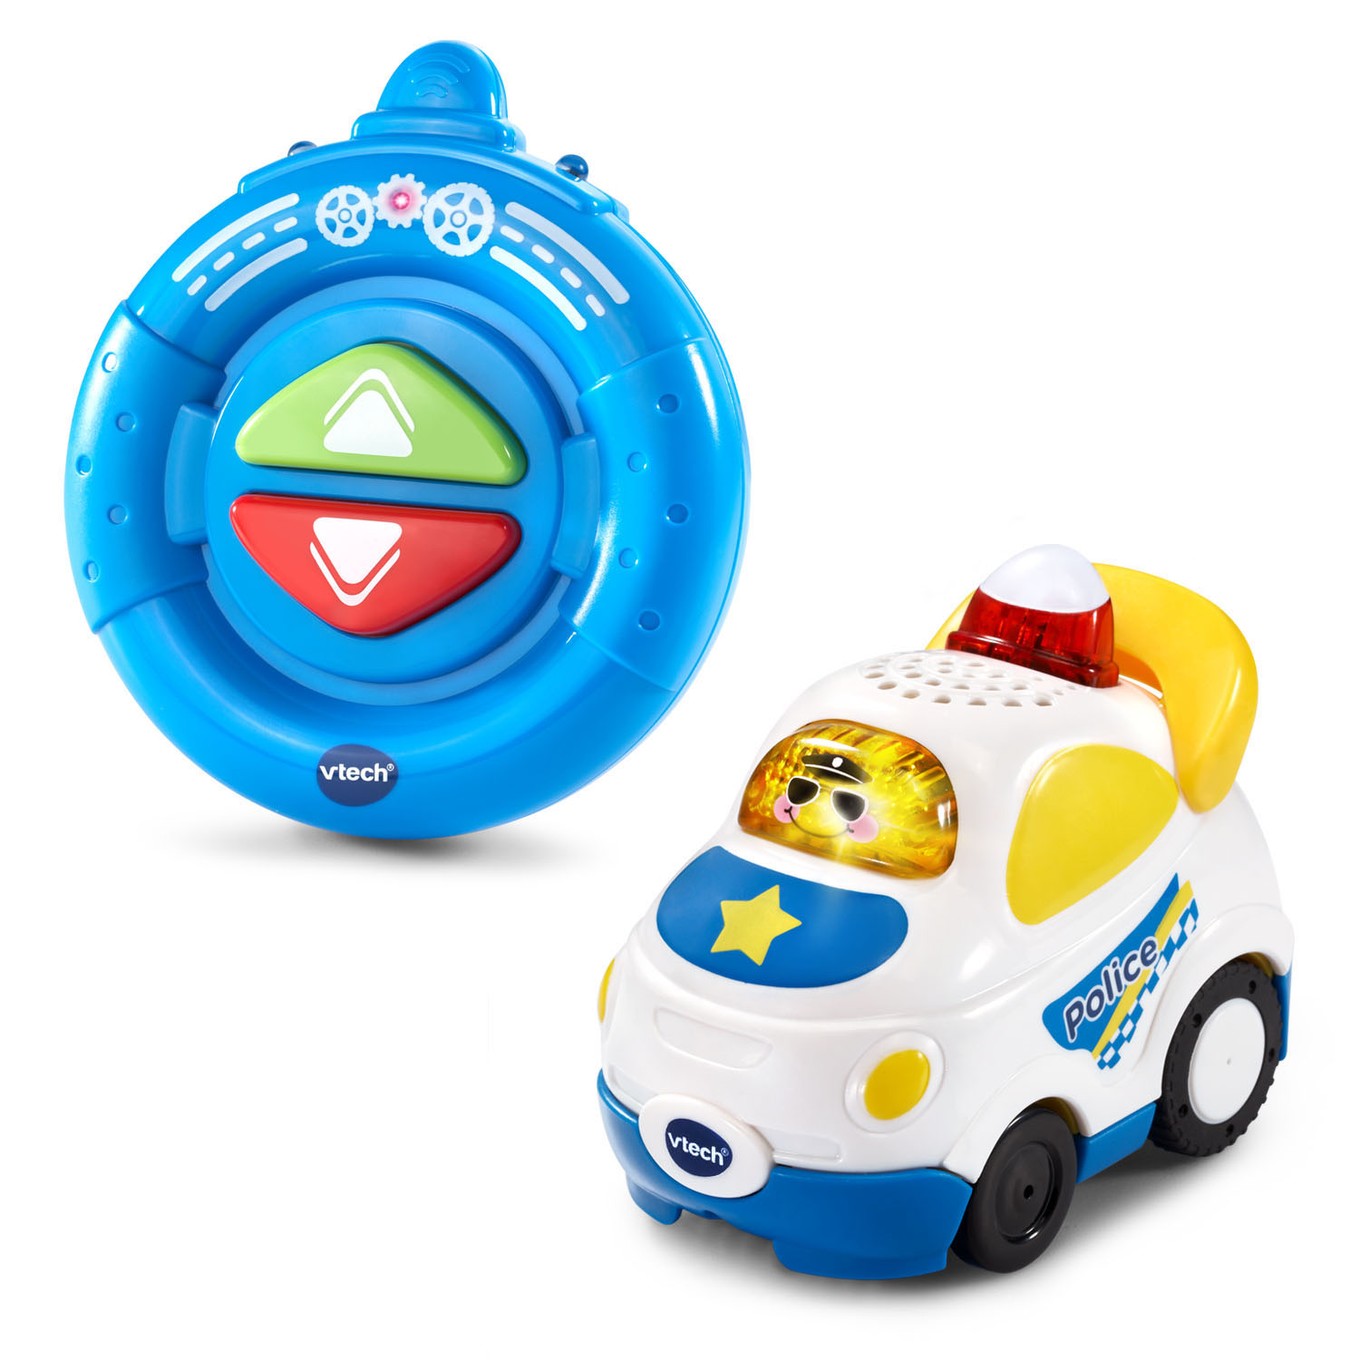 vtech police car toy